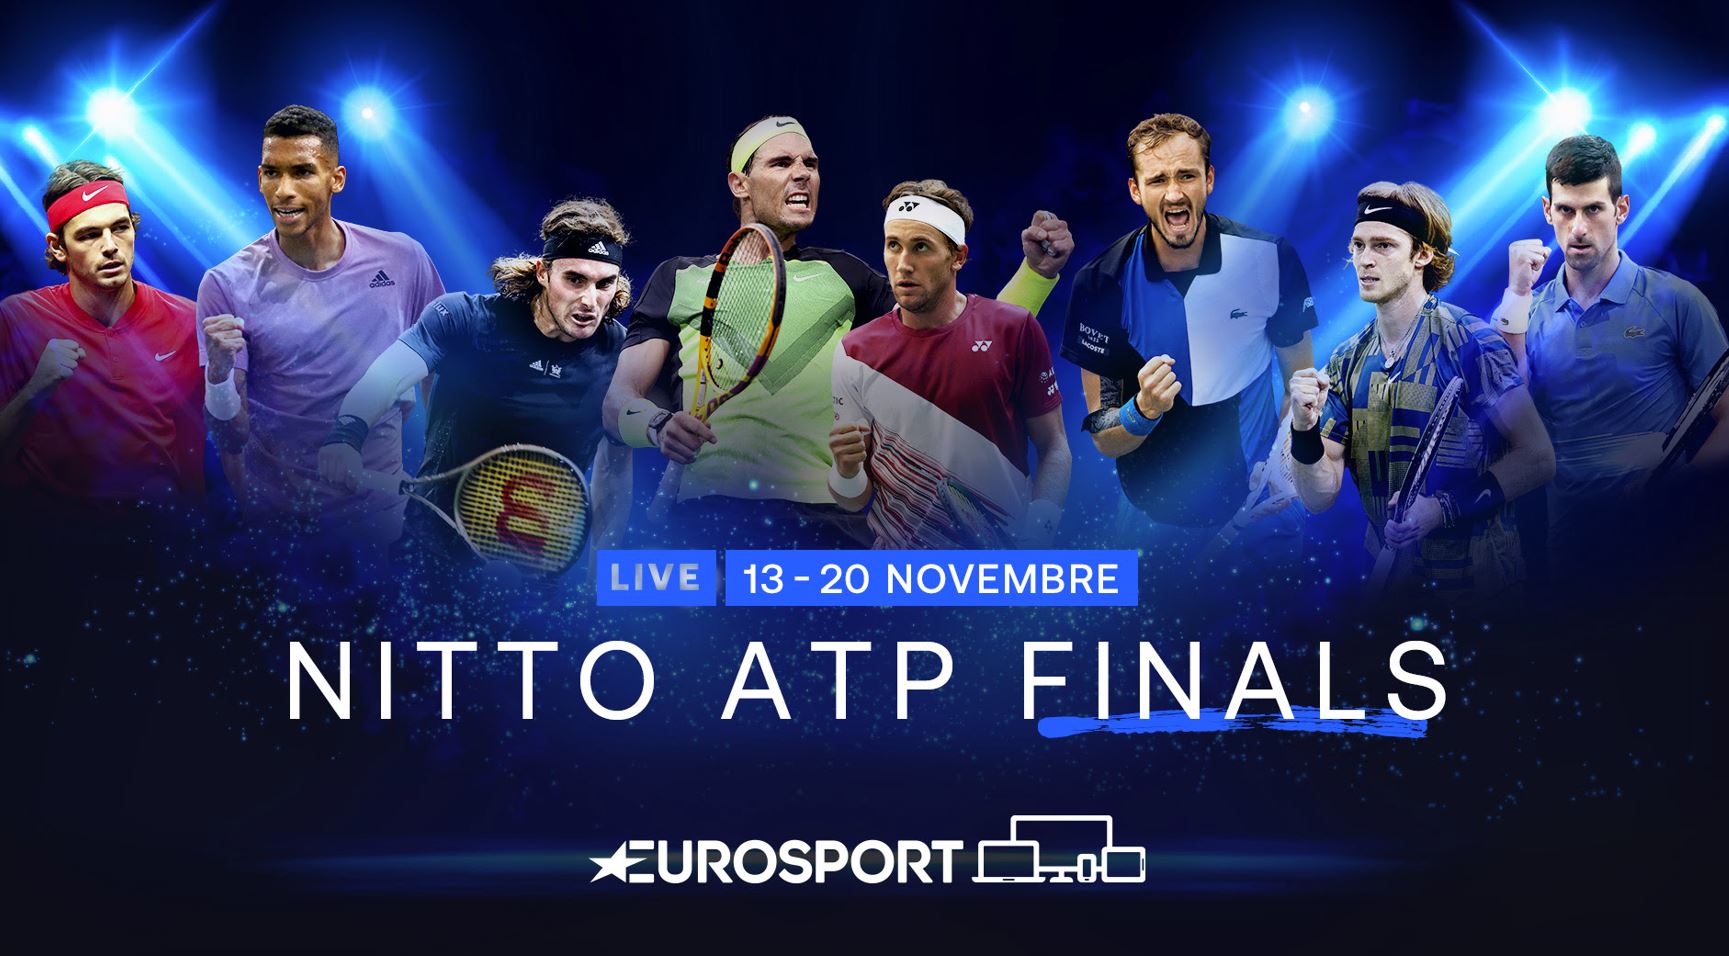 Les Nitto ATP Finals 2022 à suivre en direct et en exclusivité sur Eurosport